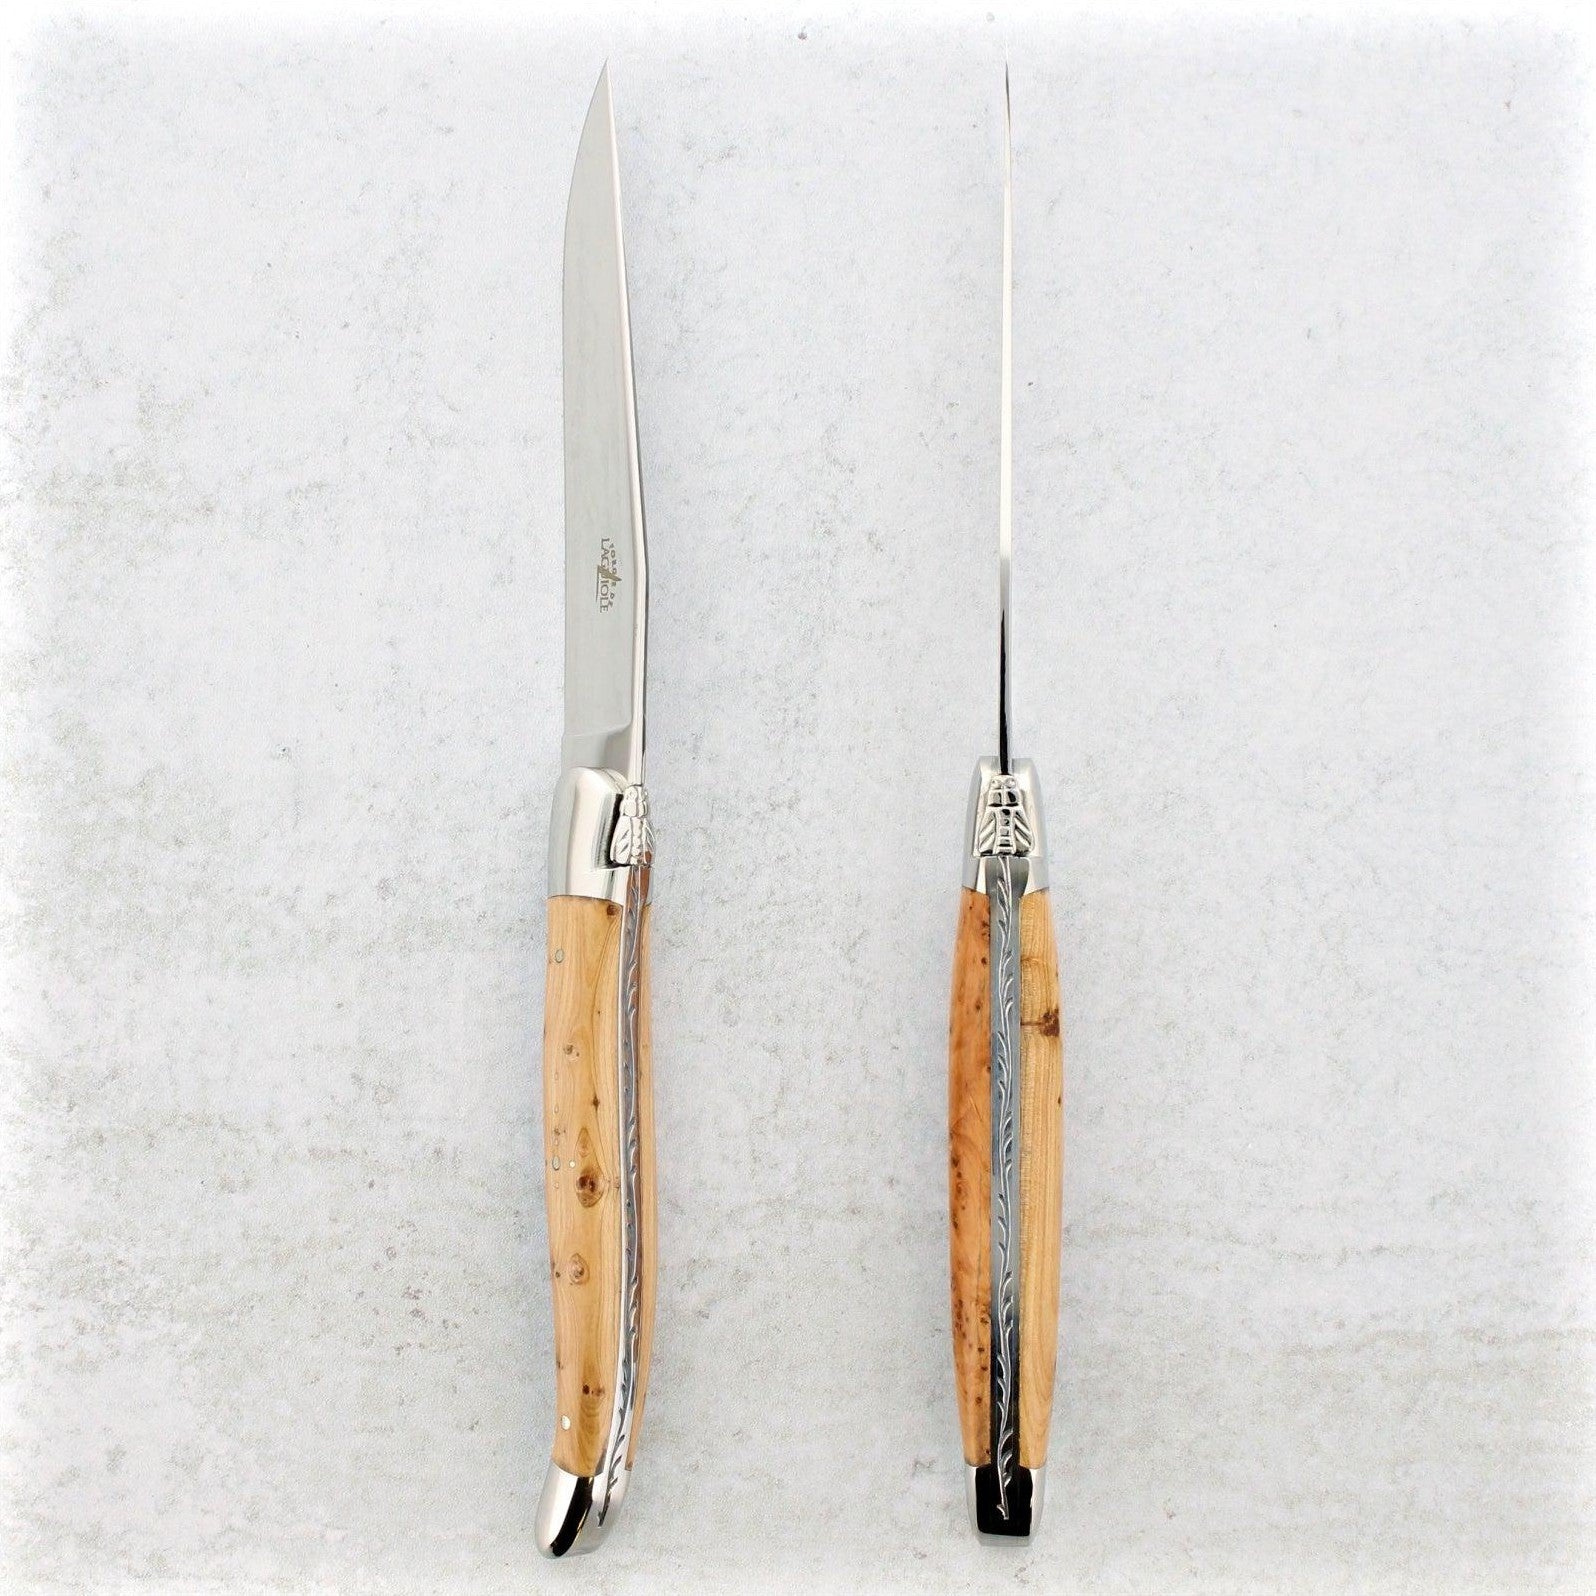 https://www.laguiole-imports.com/cdn/shop/products/Forge-de-Laguiole-Juniper-Wood-Steak-Knives-Shiny-Forge-de-Laguiole-2.jpg?v=1674998804